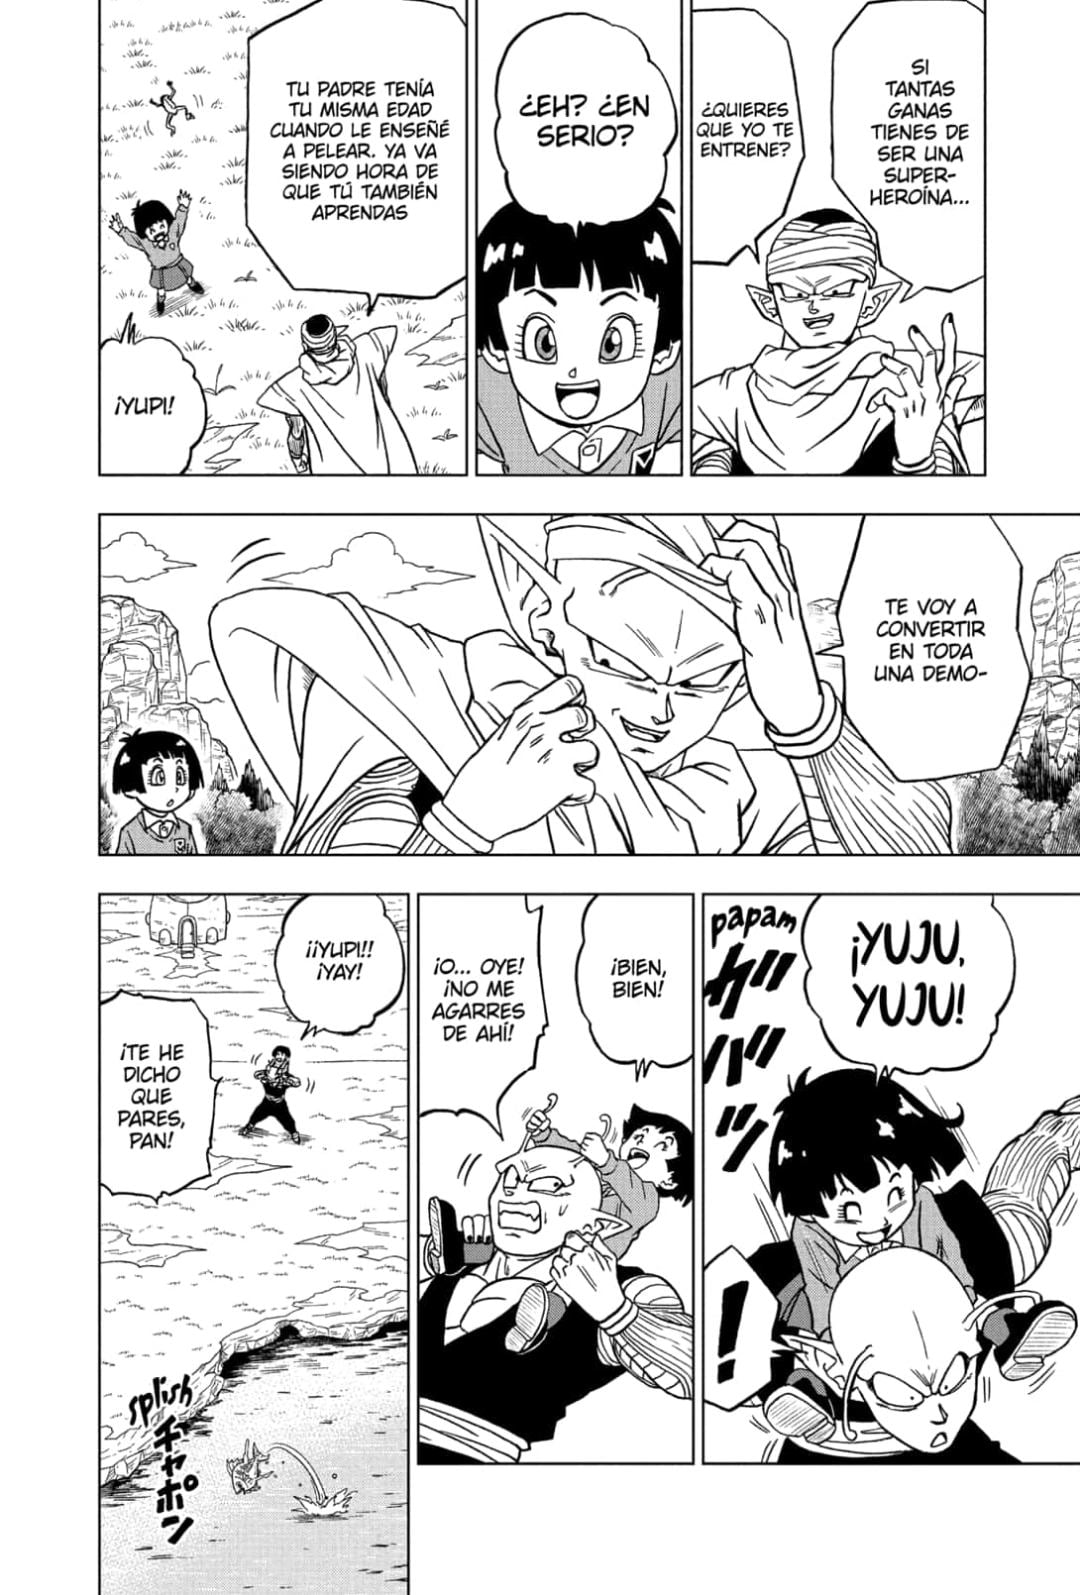 Dragon Ball Super Manga 91 Español Completo